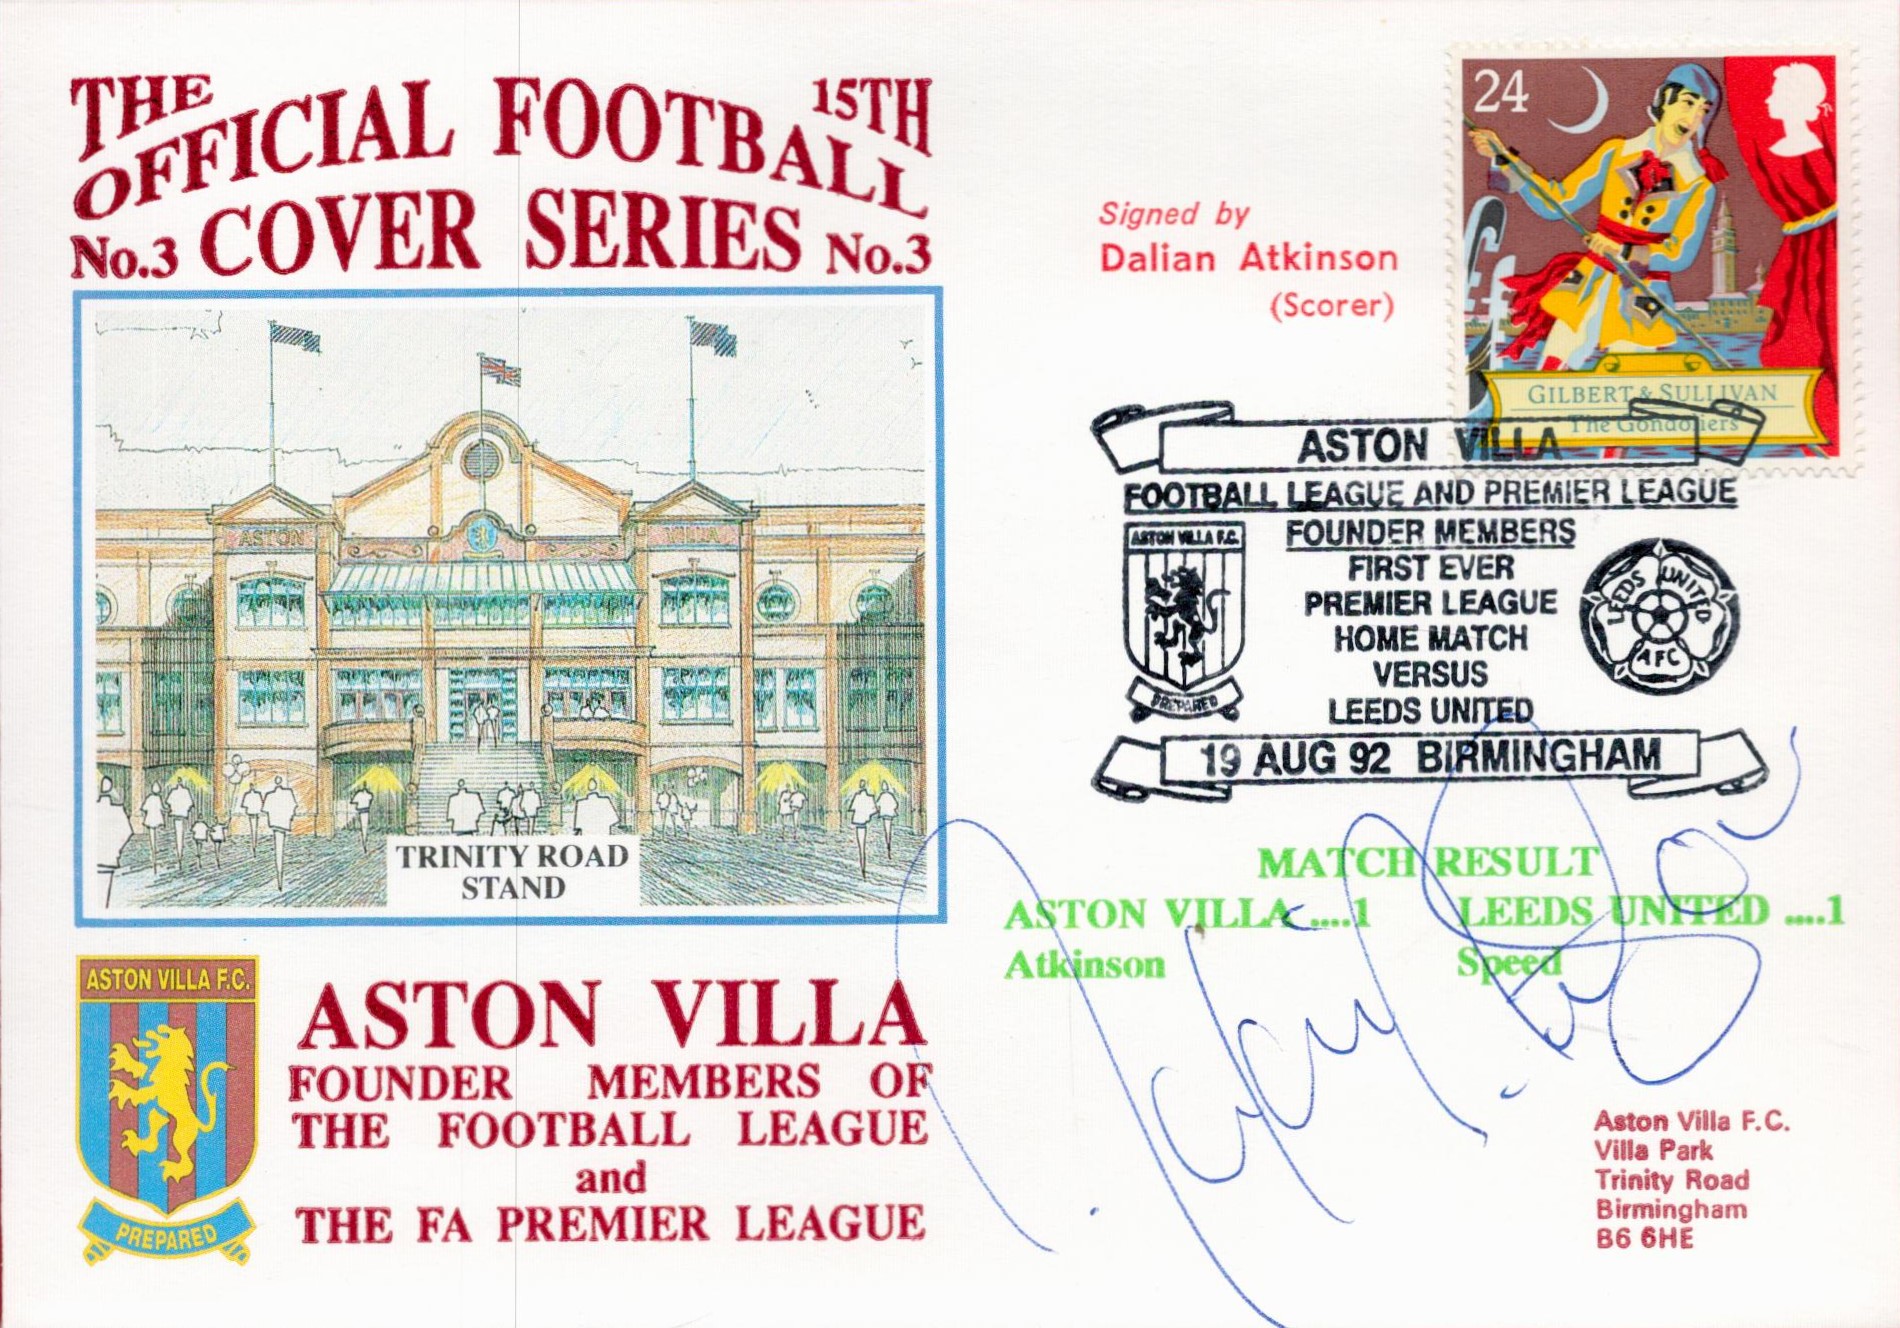 Dalian Atkinson signed Aston Villa Founder Members of the Football League and FA Premier League Dawn